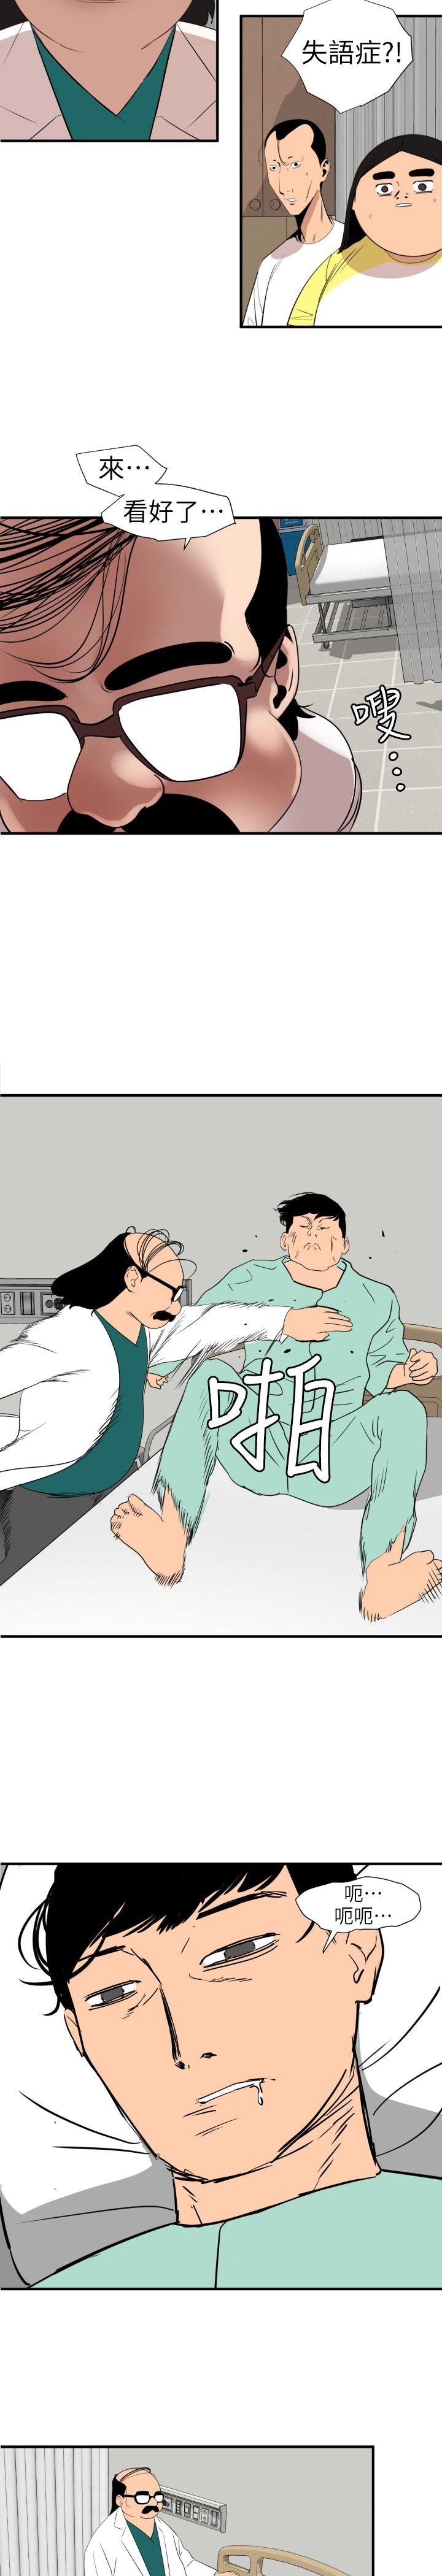 韩国污漫画 欲求王 第108话-失语症 13